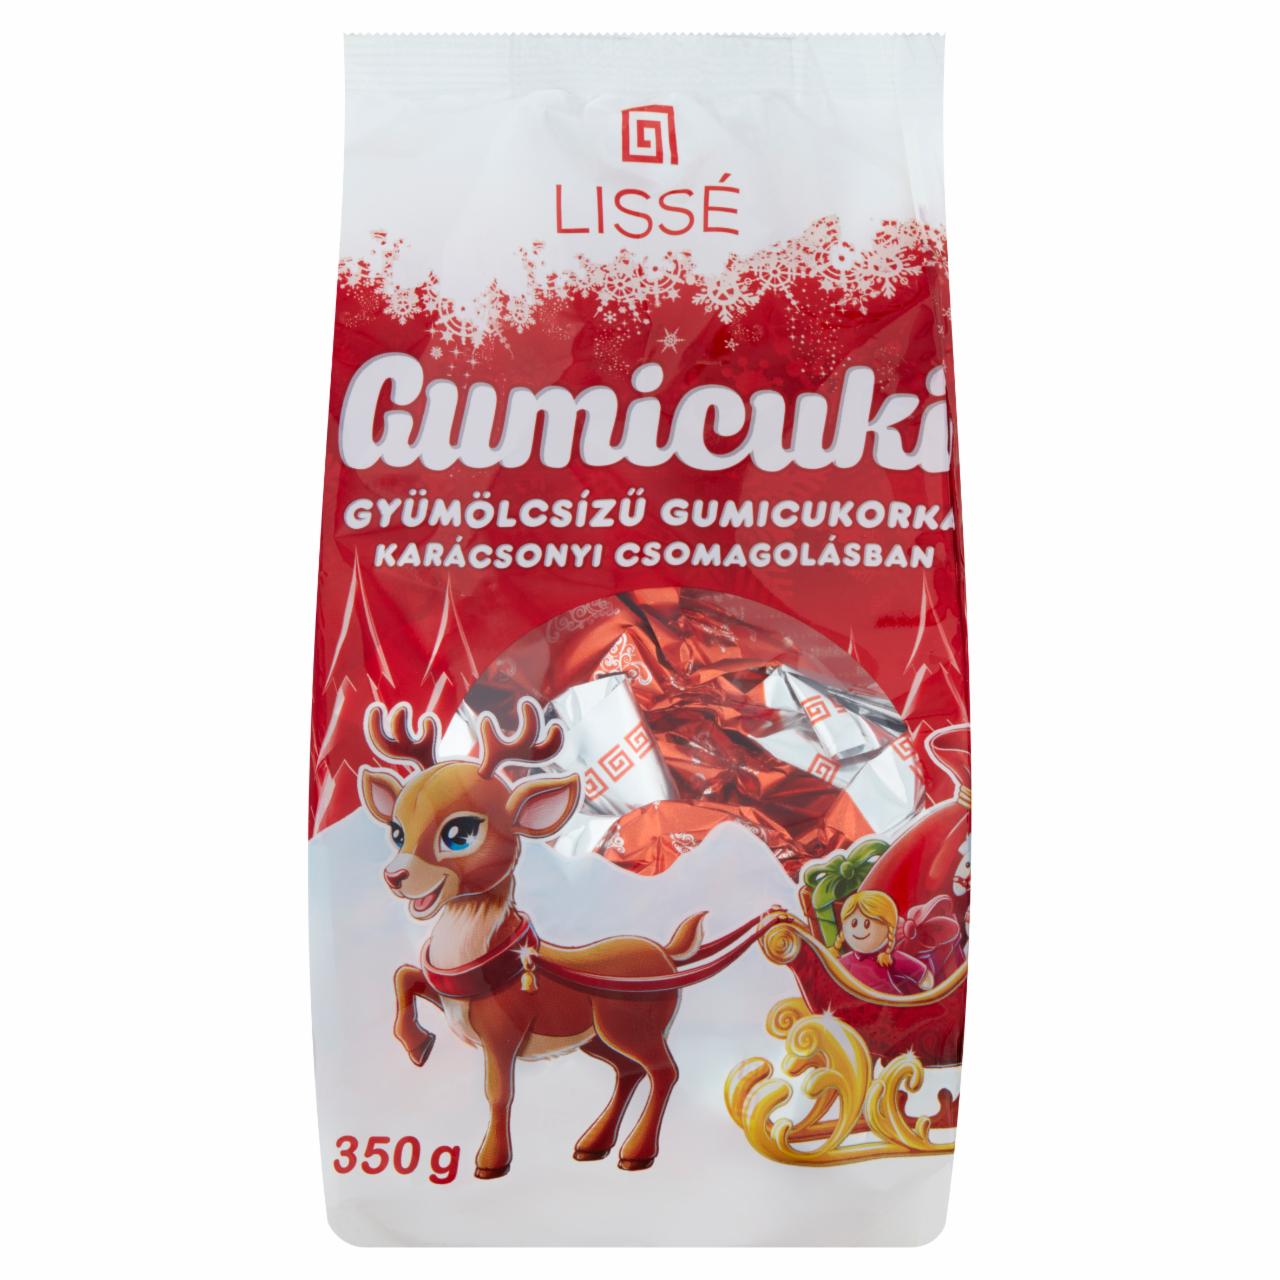 Képek - Lissé Gumicuki gyümölcsízű gumicukorka karácsonyi csomagolásban 350 g